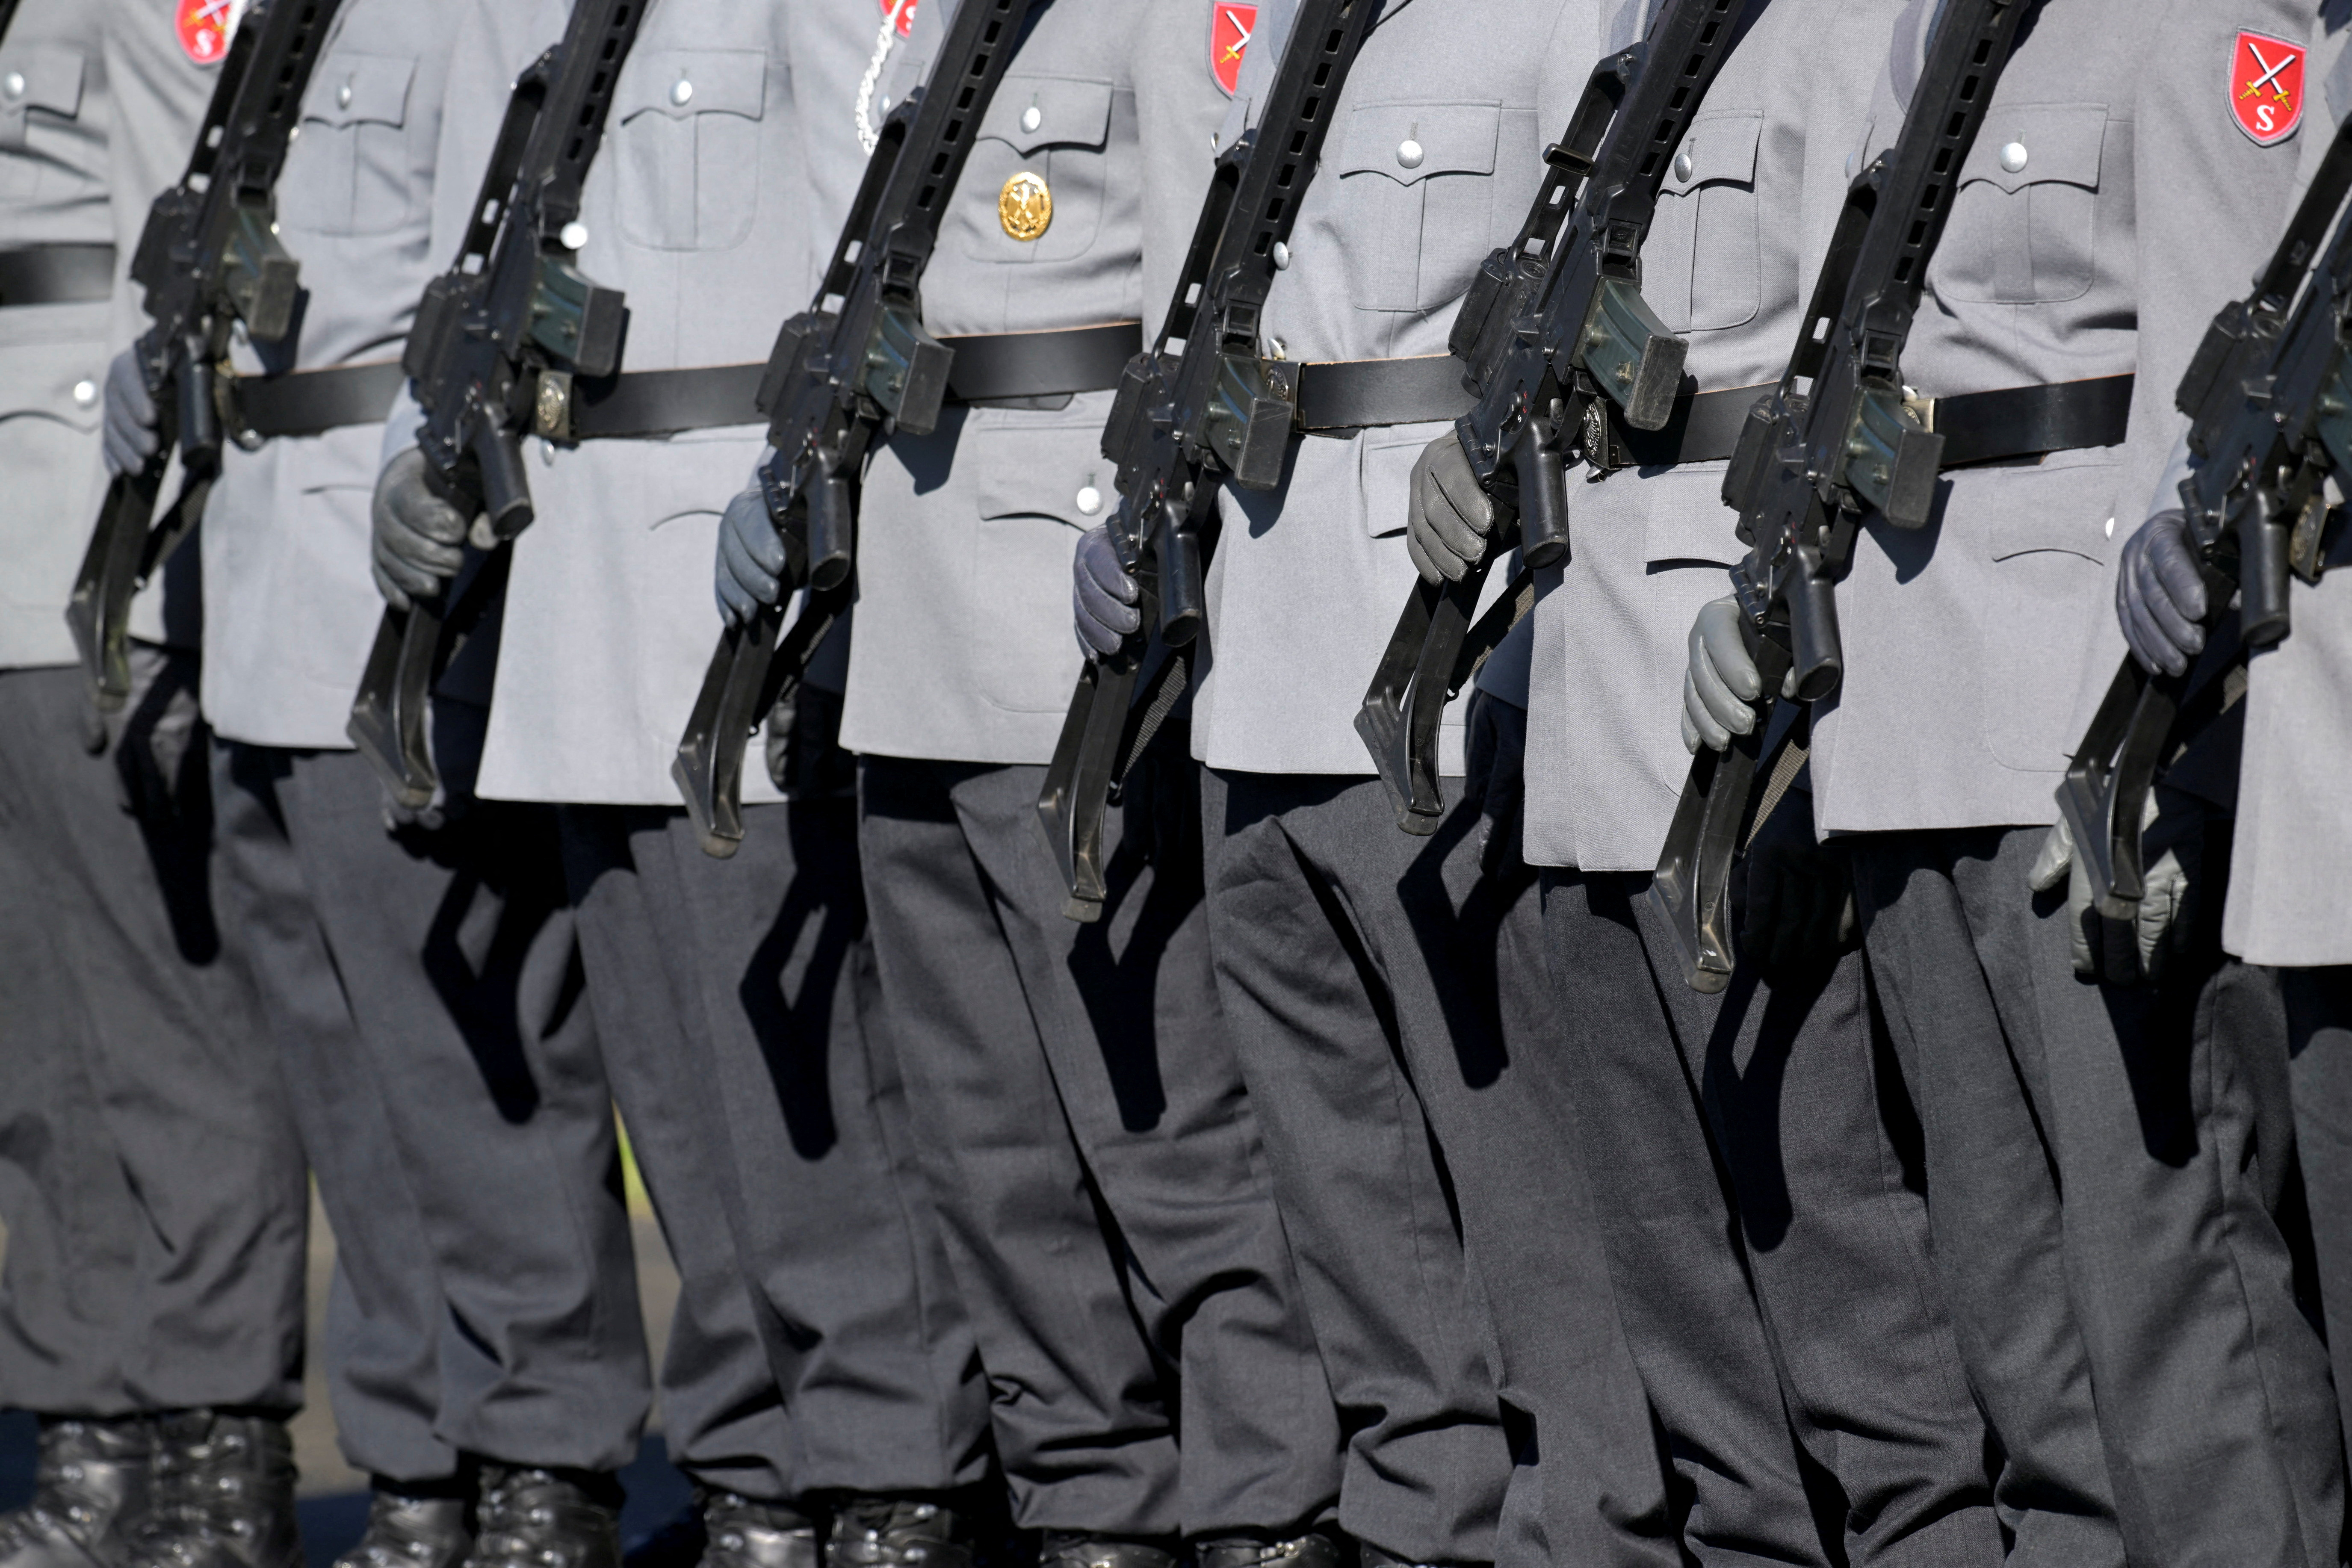 German President Steinmeier attends a Bundeswehr training in Munster